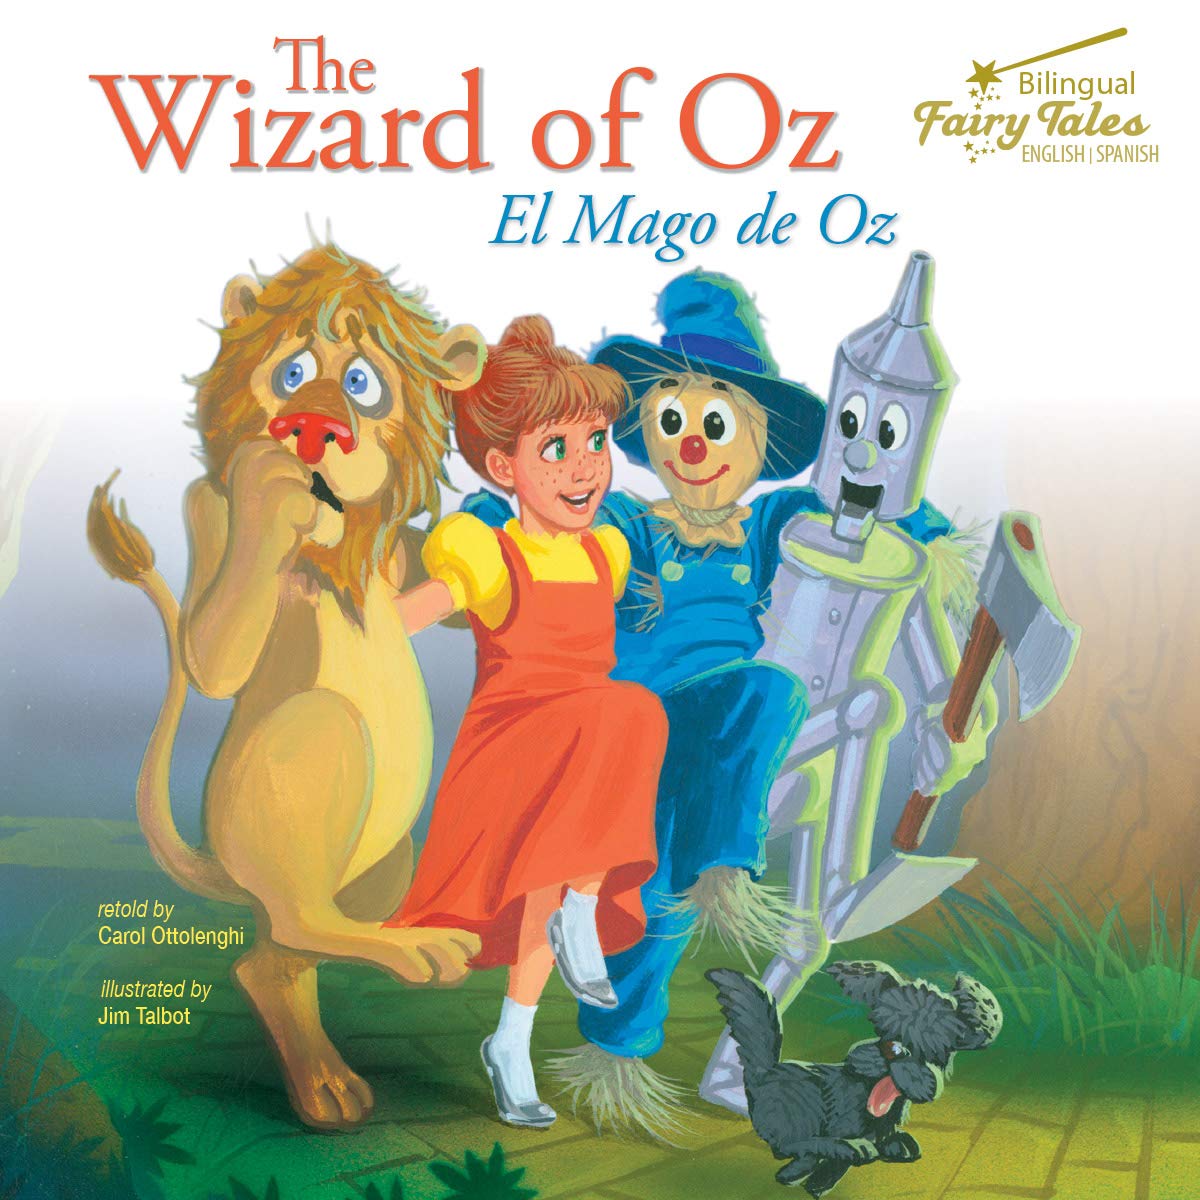 Libro: The Bilingual Fairy Tales Wizard of Oz: El Mago de Oz por Carol Ottolenghi